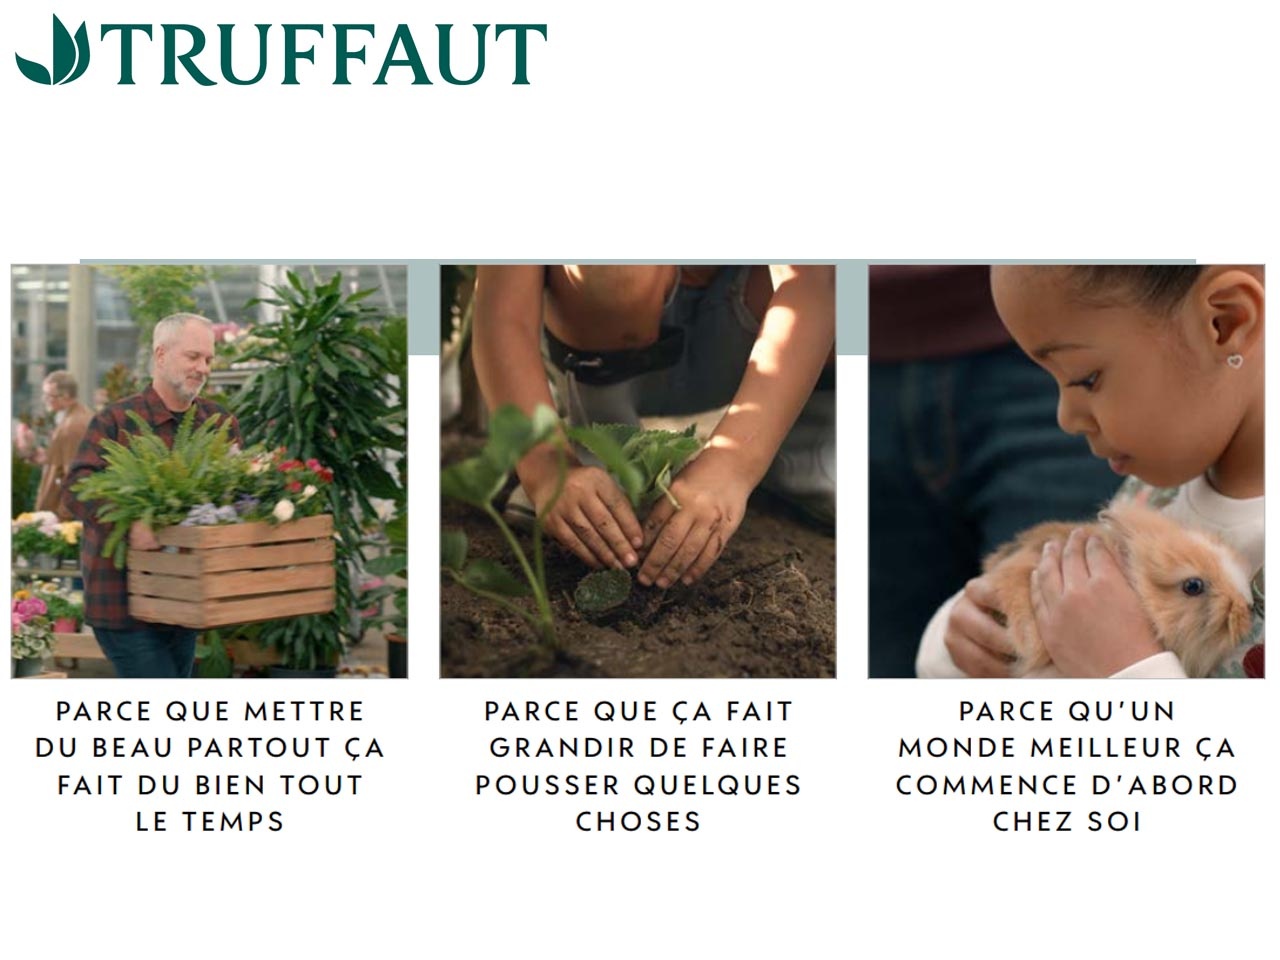 Truffaut : Une 1ère campagne TV et une signature « Mettons plus de vie dans nos vies » qui illustre le lien à la marque